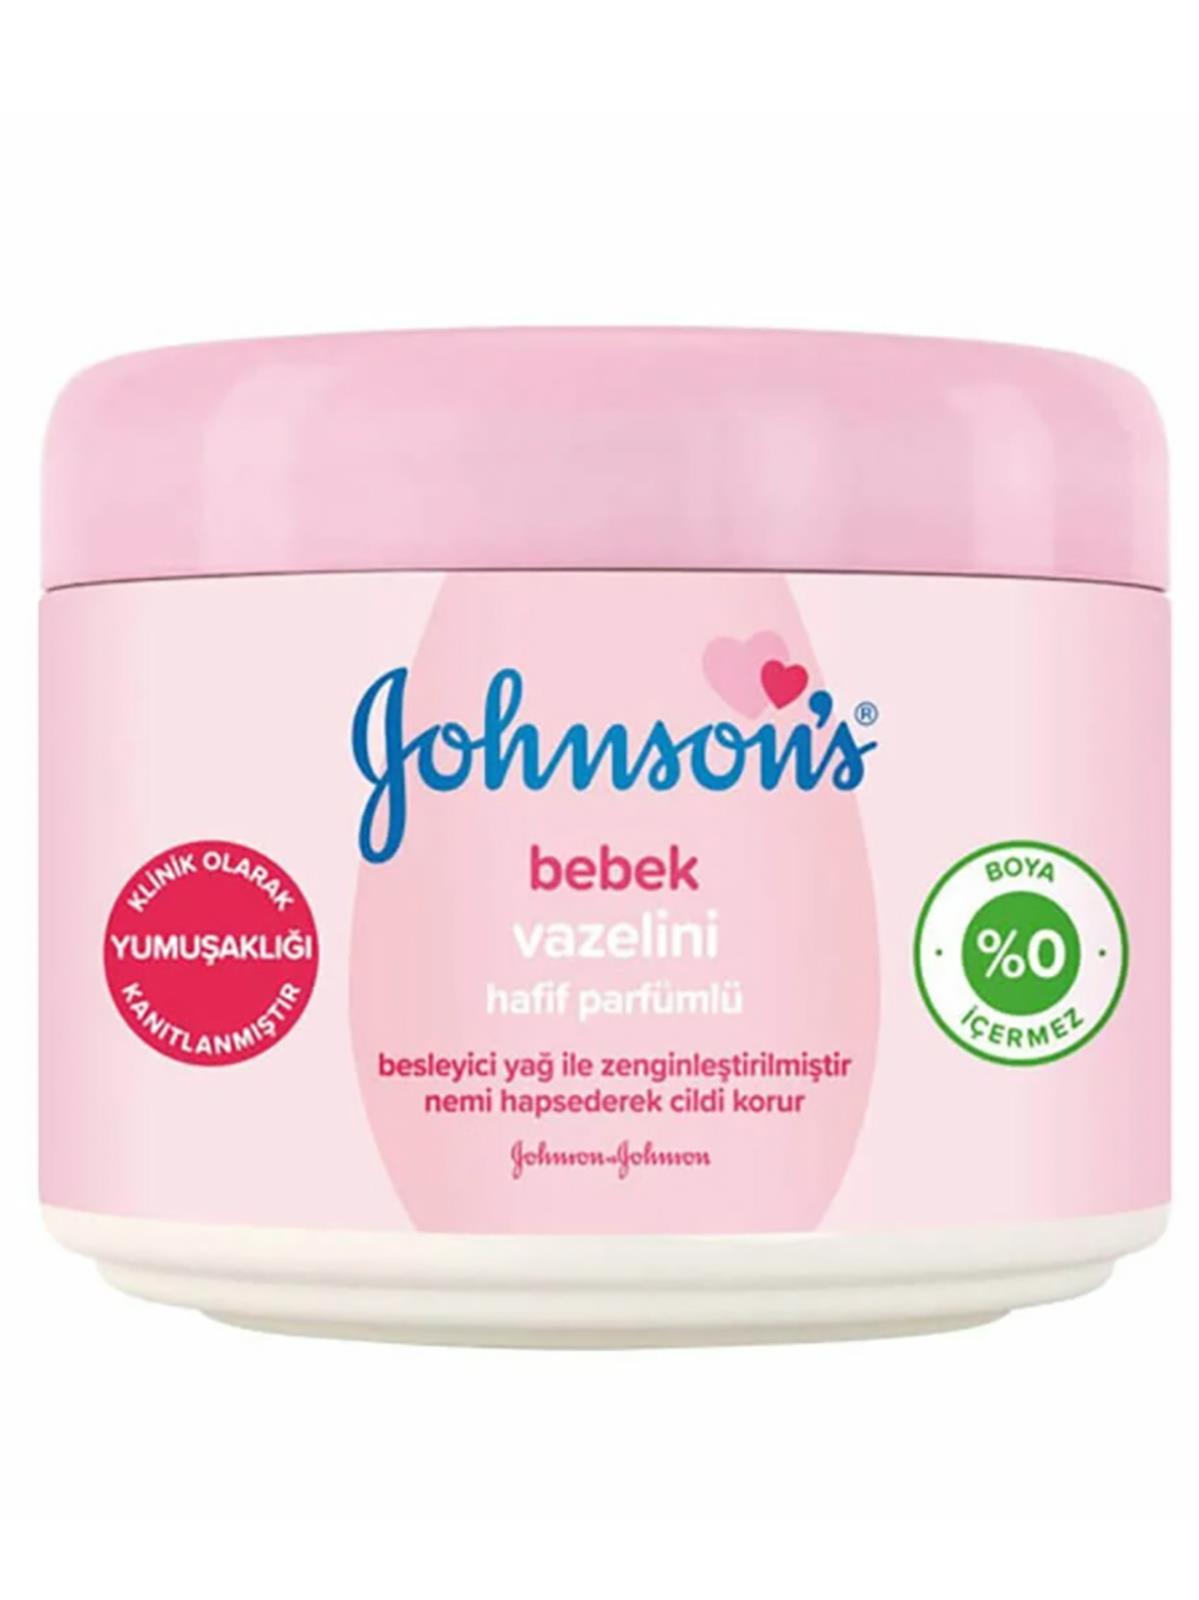 Johnson's Baby Hafif Parfümlü Bebek Vazelini 250 gr